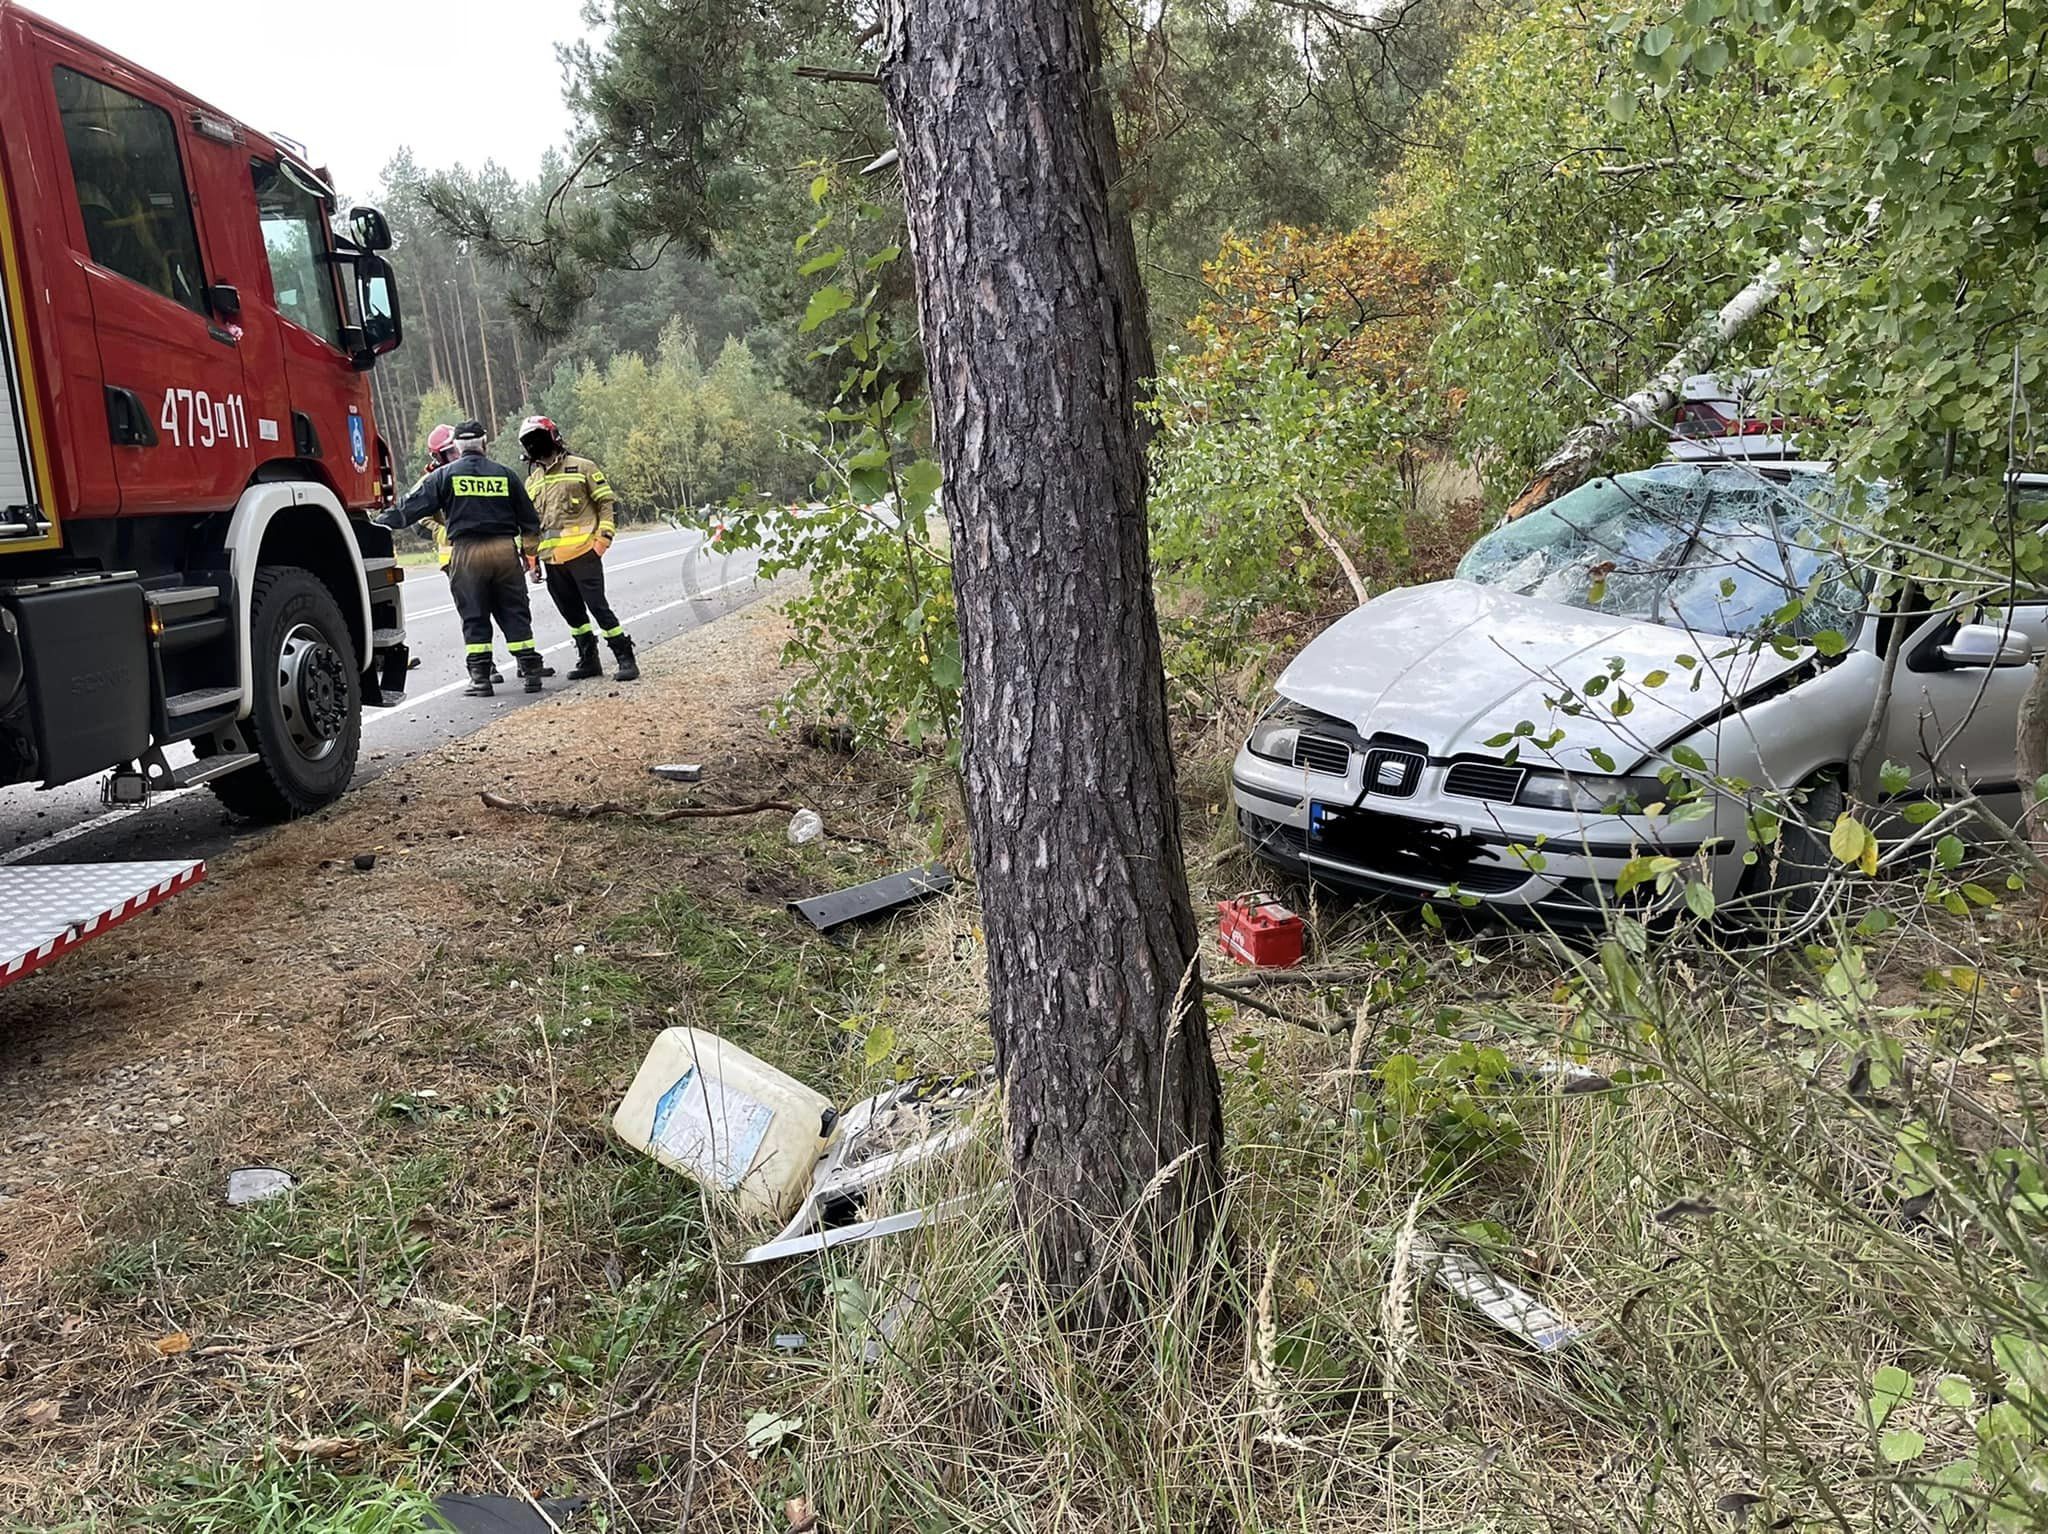 Seat uderzył w drzewo, kierowca zginął na miejscu (zdjęcia)